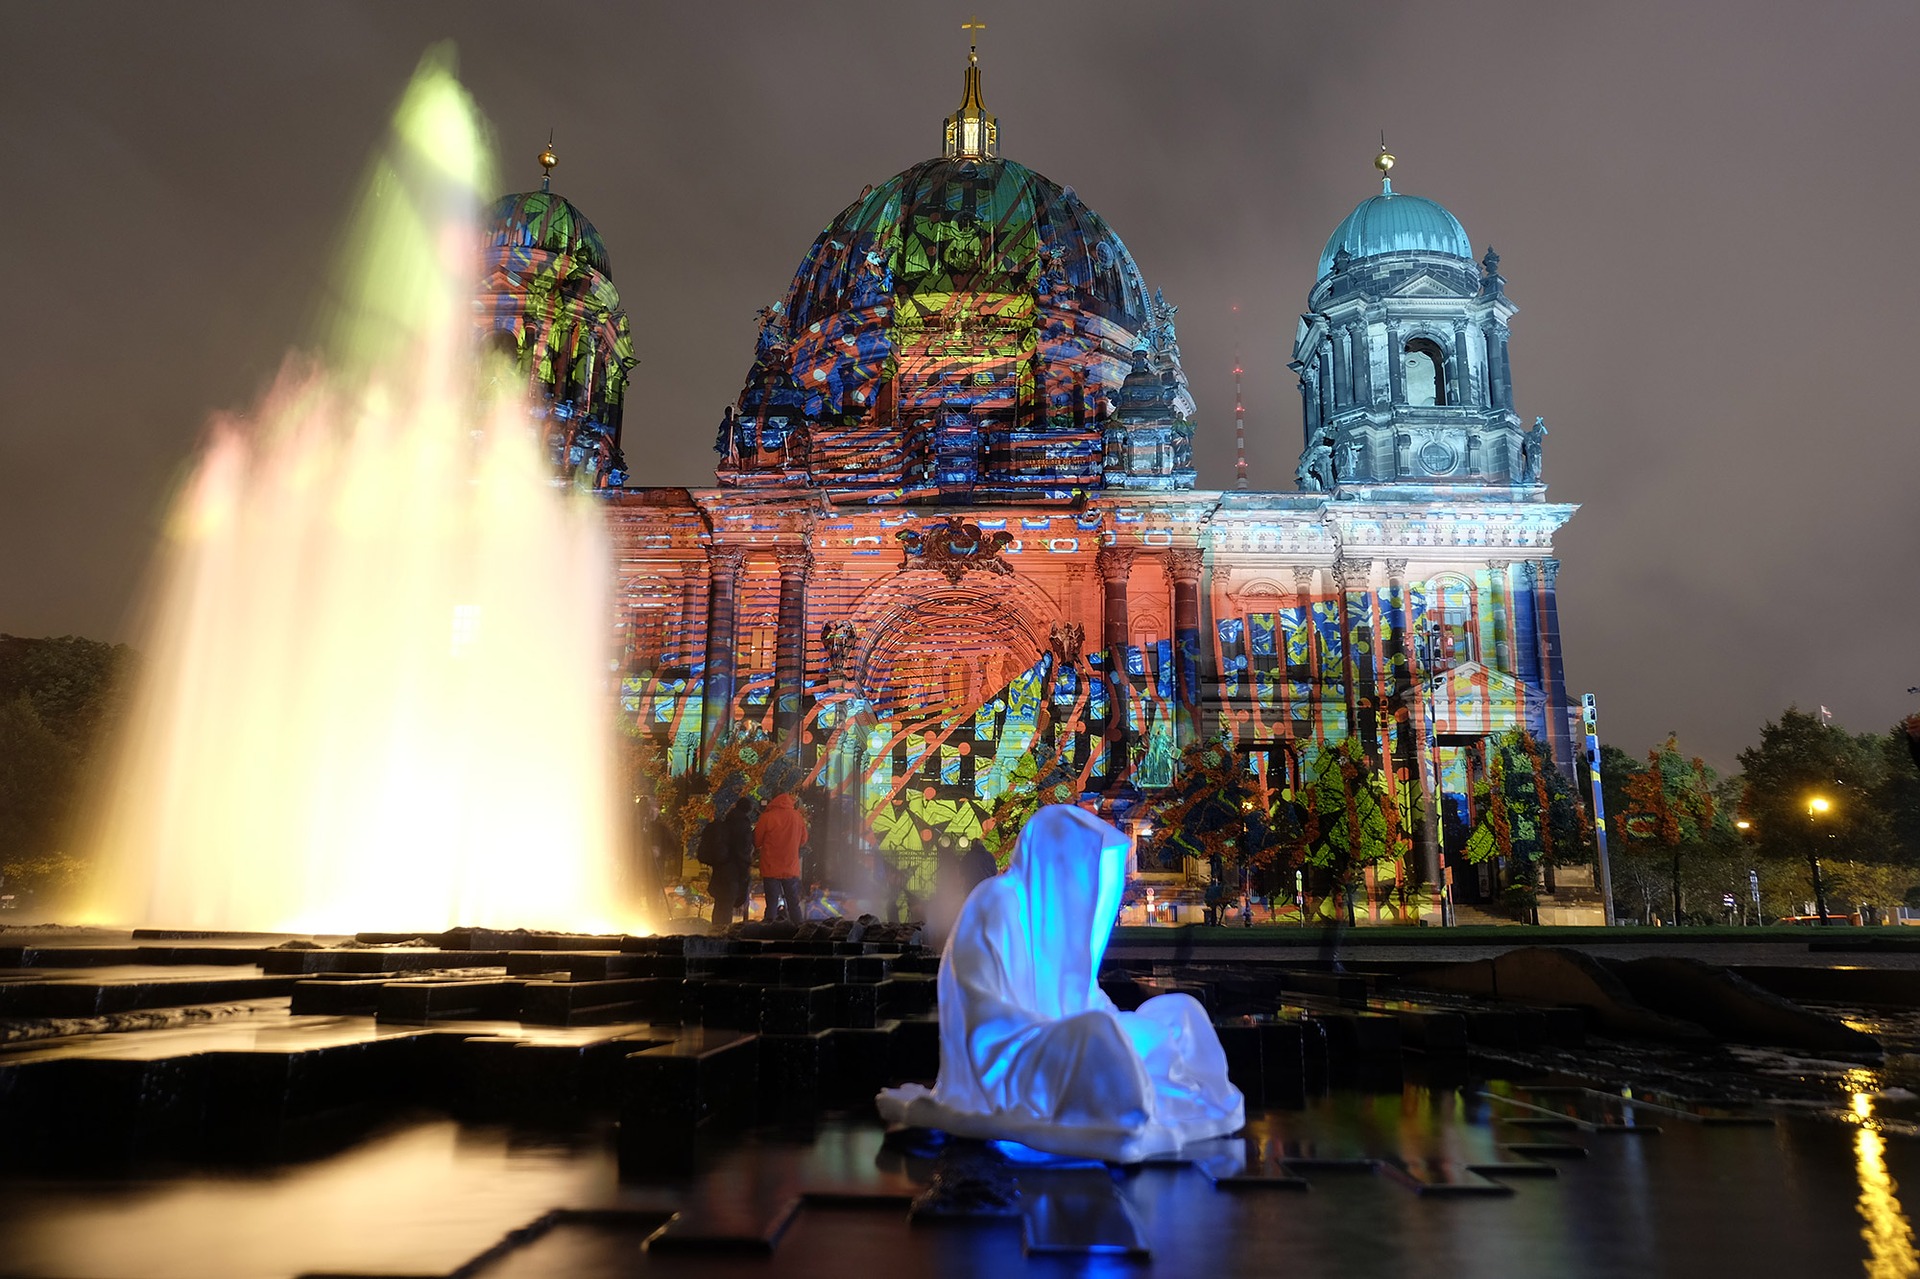 Festival of Lights Berlin - Berliner Dom